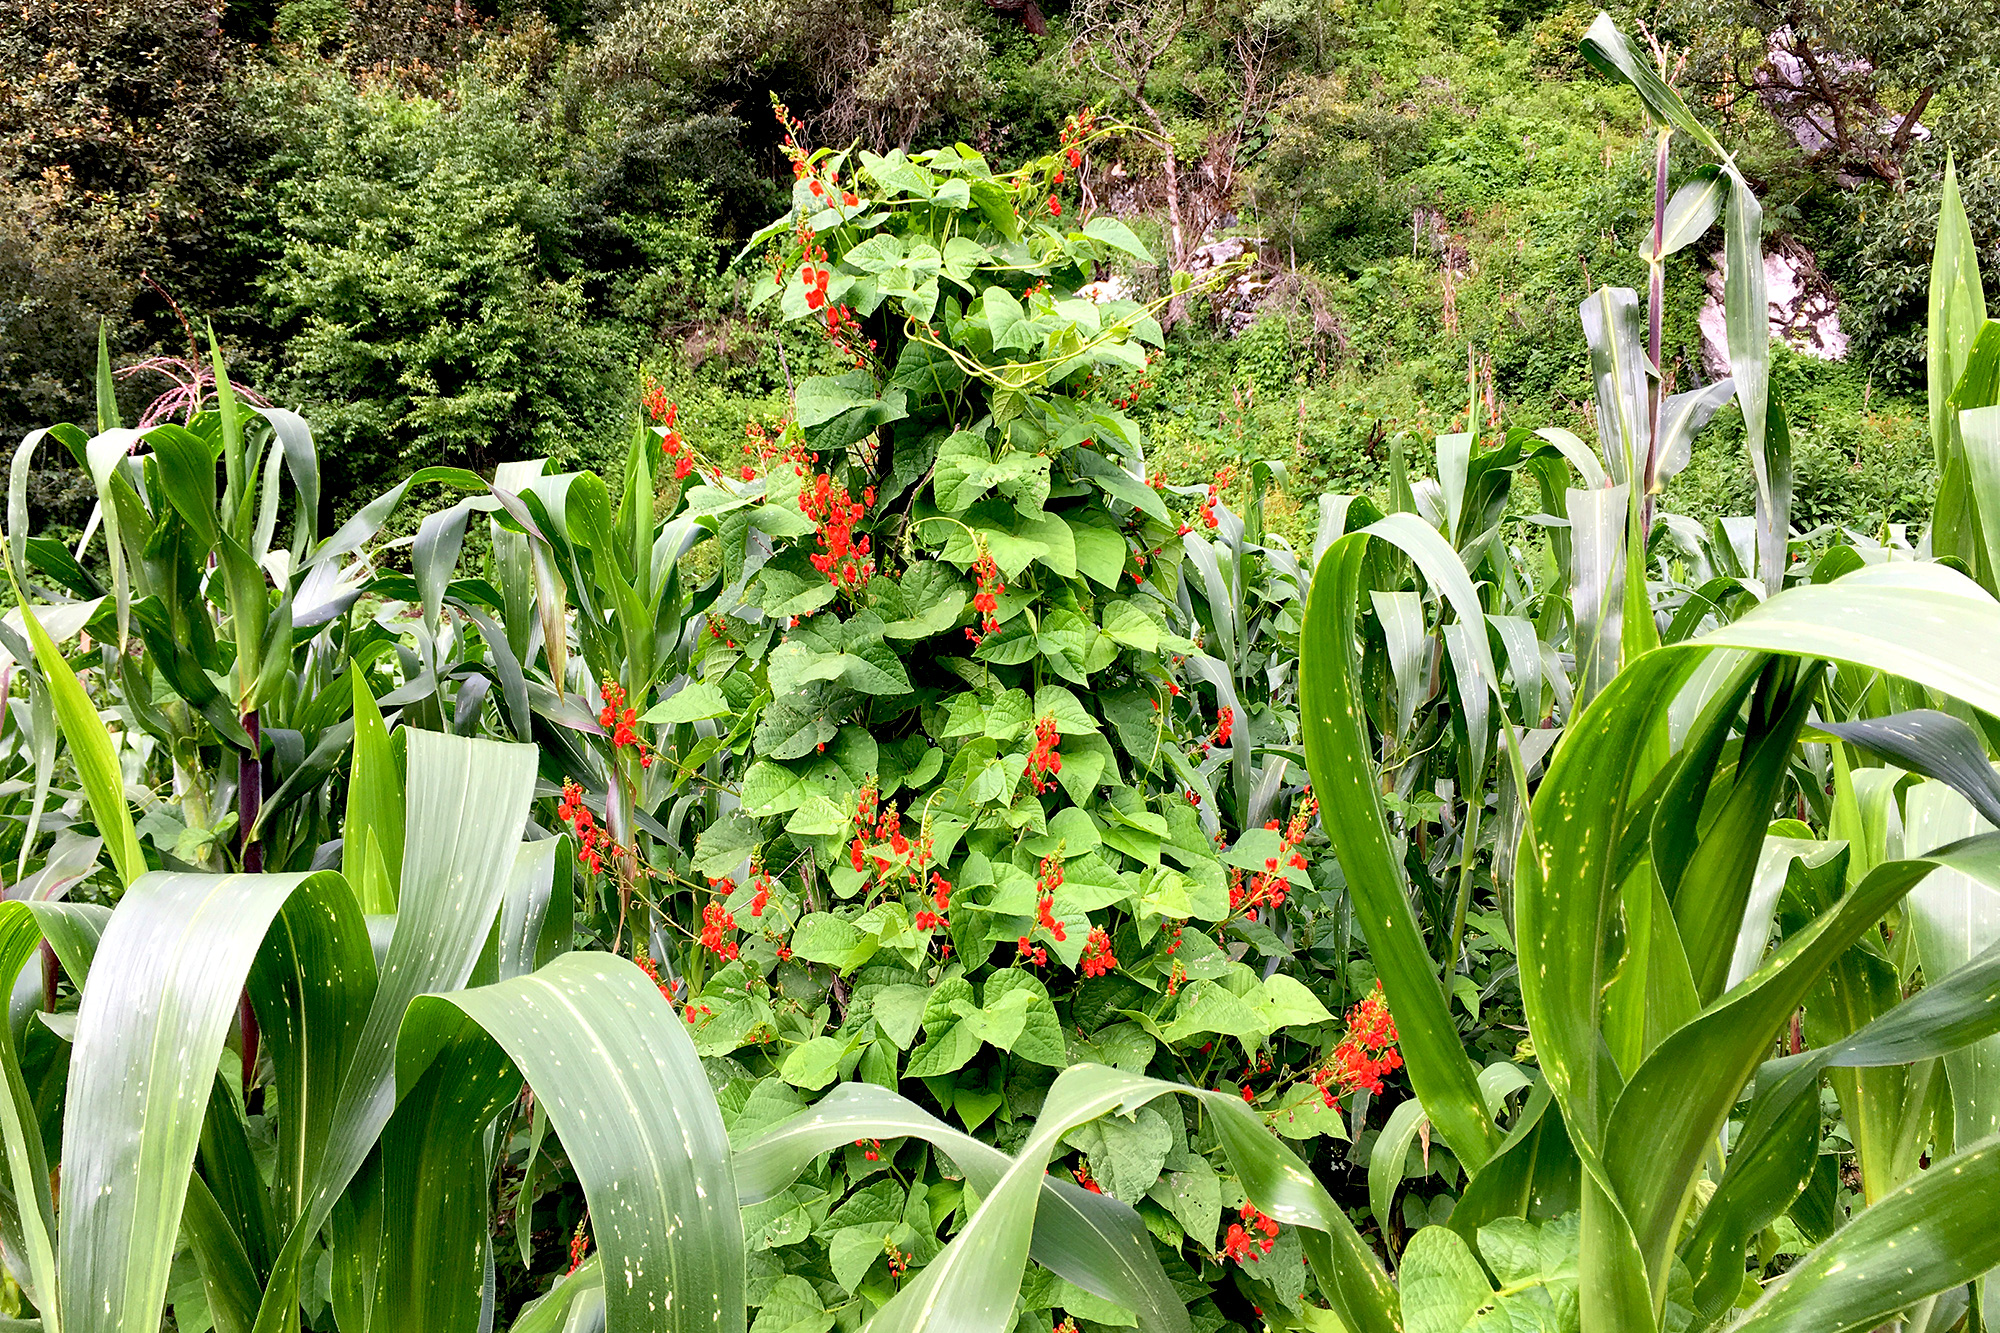 Flor de Botil growing on a milpa in Chiapas, Mexico.